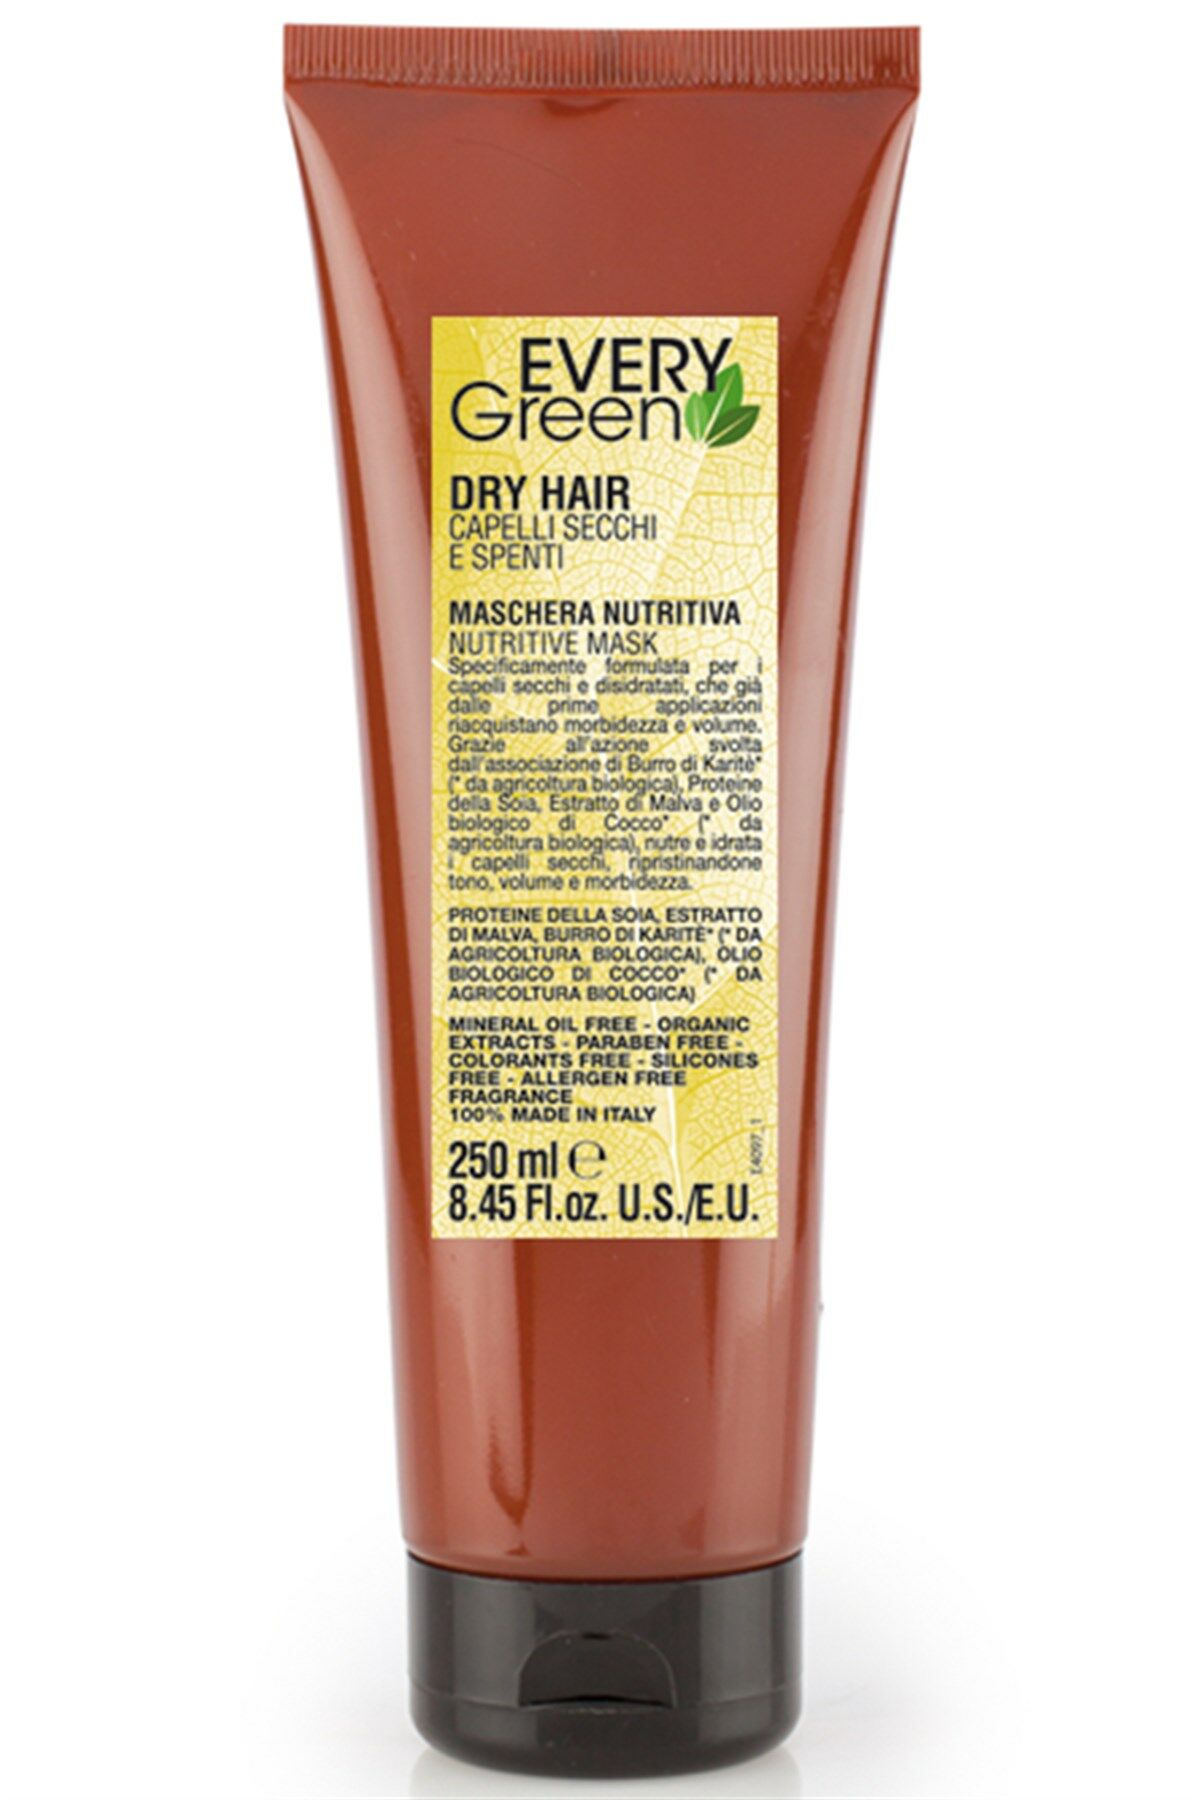 EveryGreen Dry Hair Nutritive Mask - Kuru Saçlara Özel Bakım Maskesi 250 Ml.